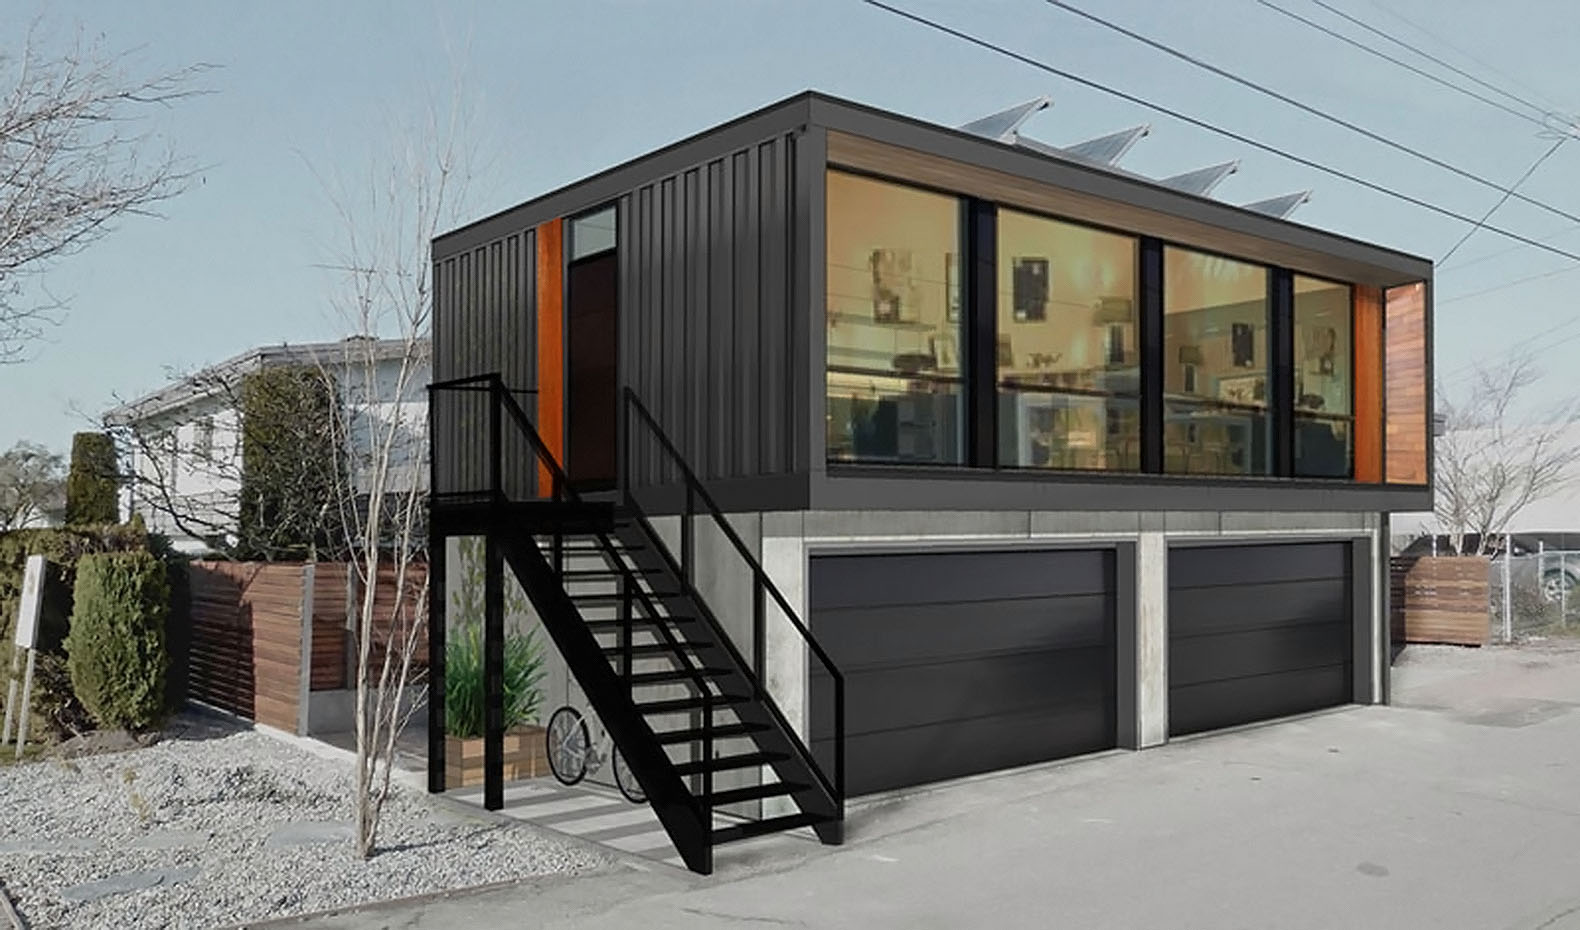 
Màu đen huyền bí của container tăng sự cá tính cho ngôi nhà
